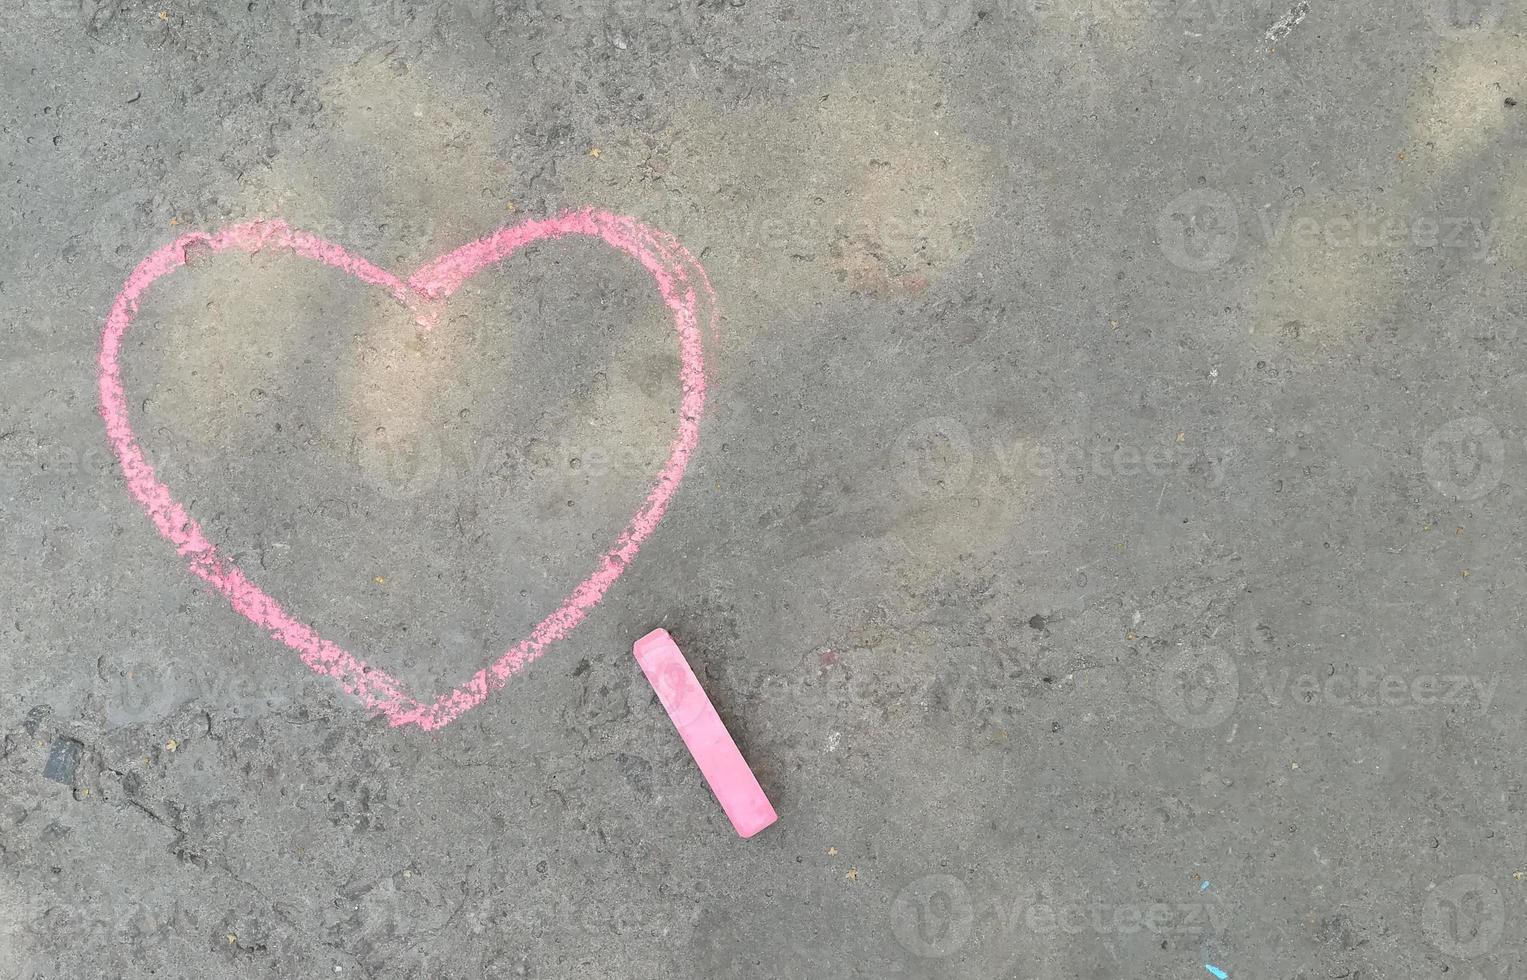 coração rosa desenhado com giz no asfalto. amo confessar. lugar de banner para texto, dia dos namorados, espaço de cópia de criatividade de crianças, verão foto